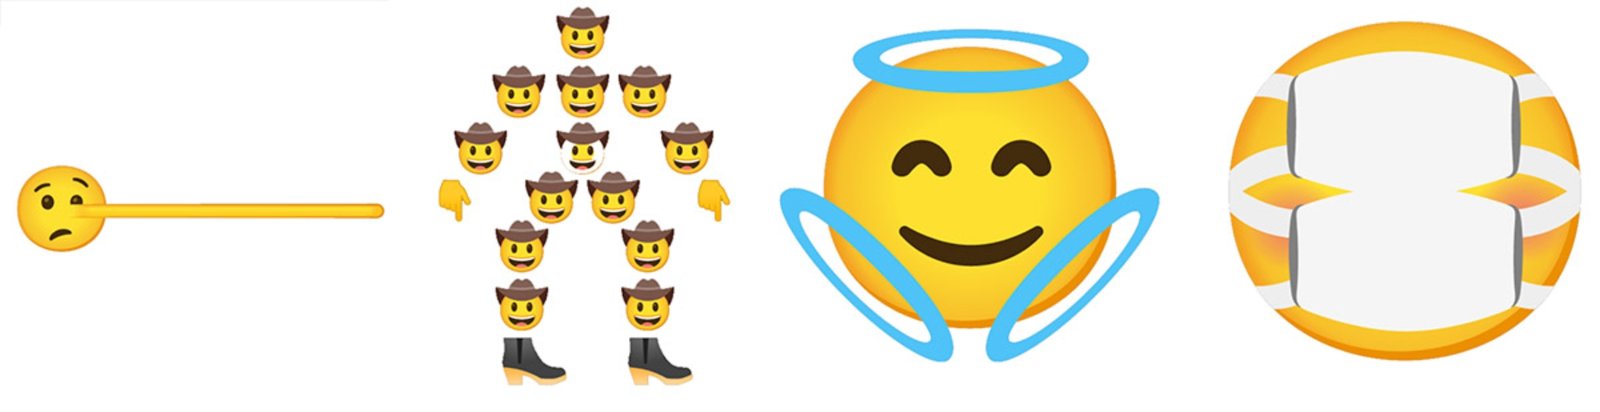 Gboard 3 combo emojis